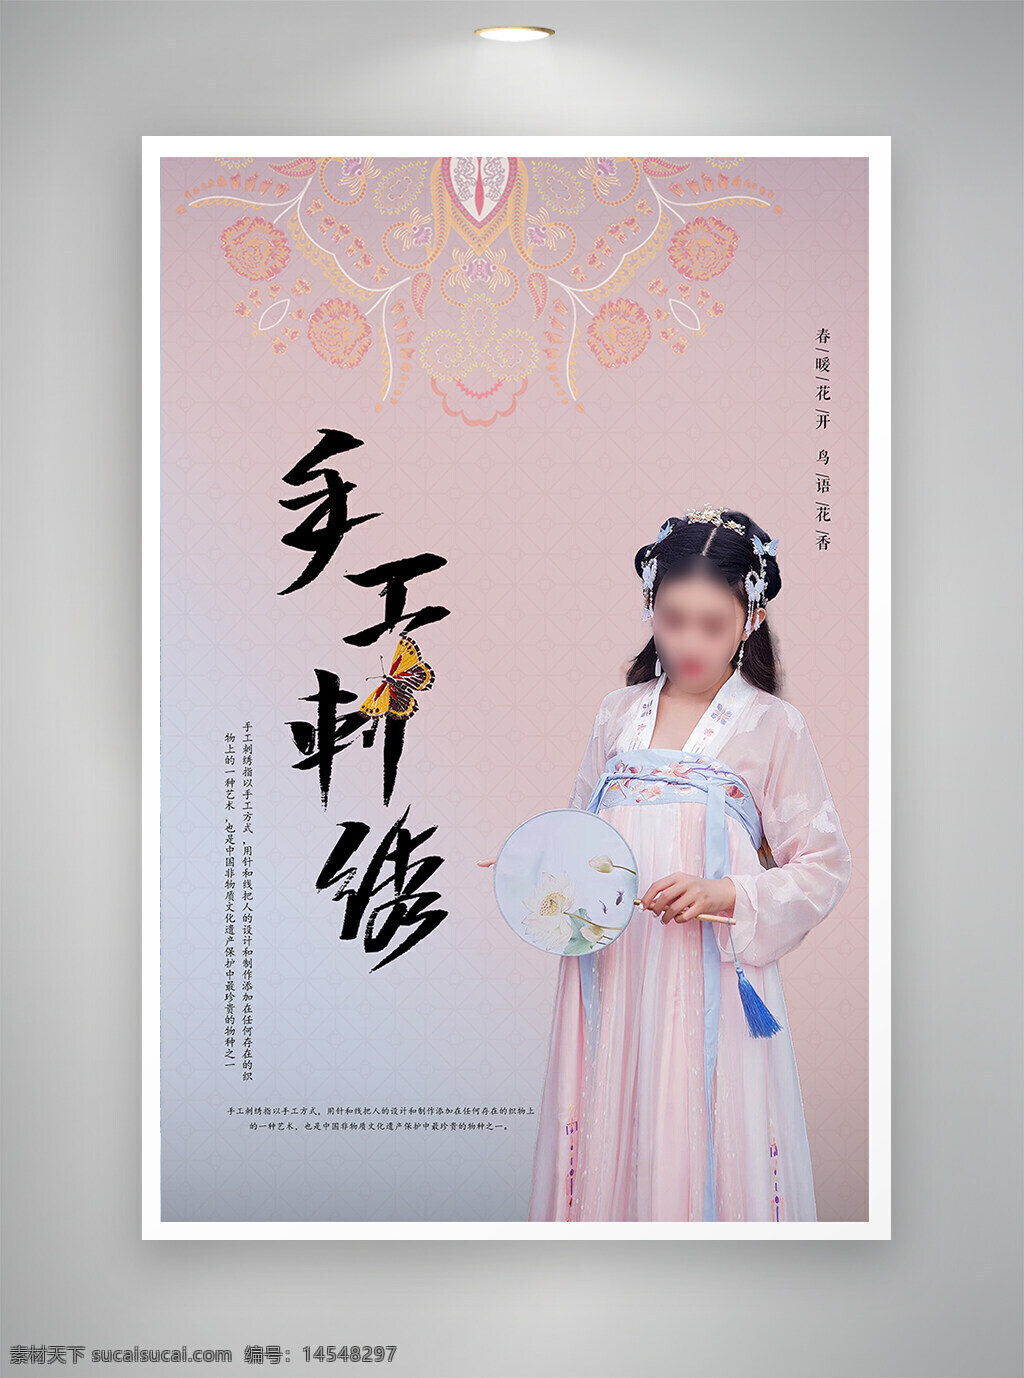 中国风海报 节日海报 刺绣海报 促销海报